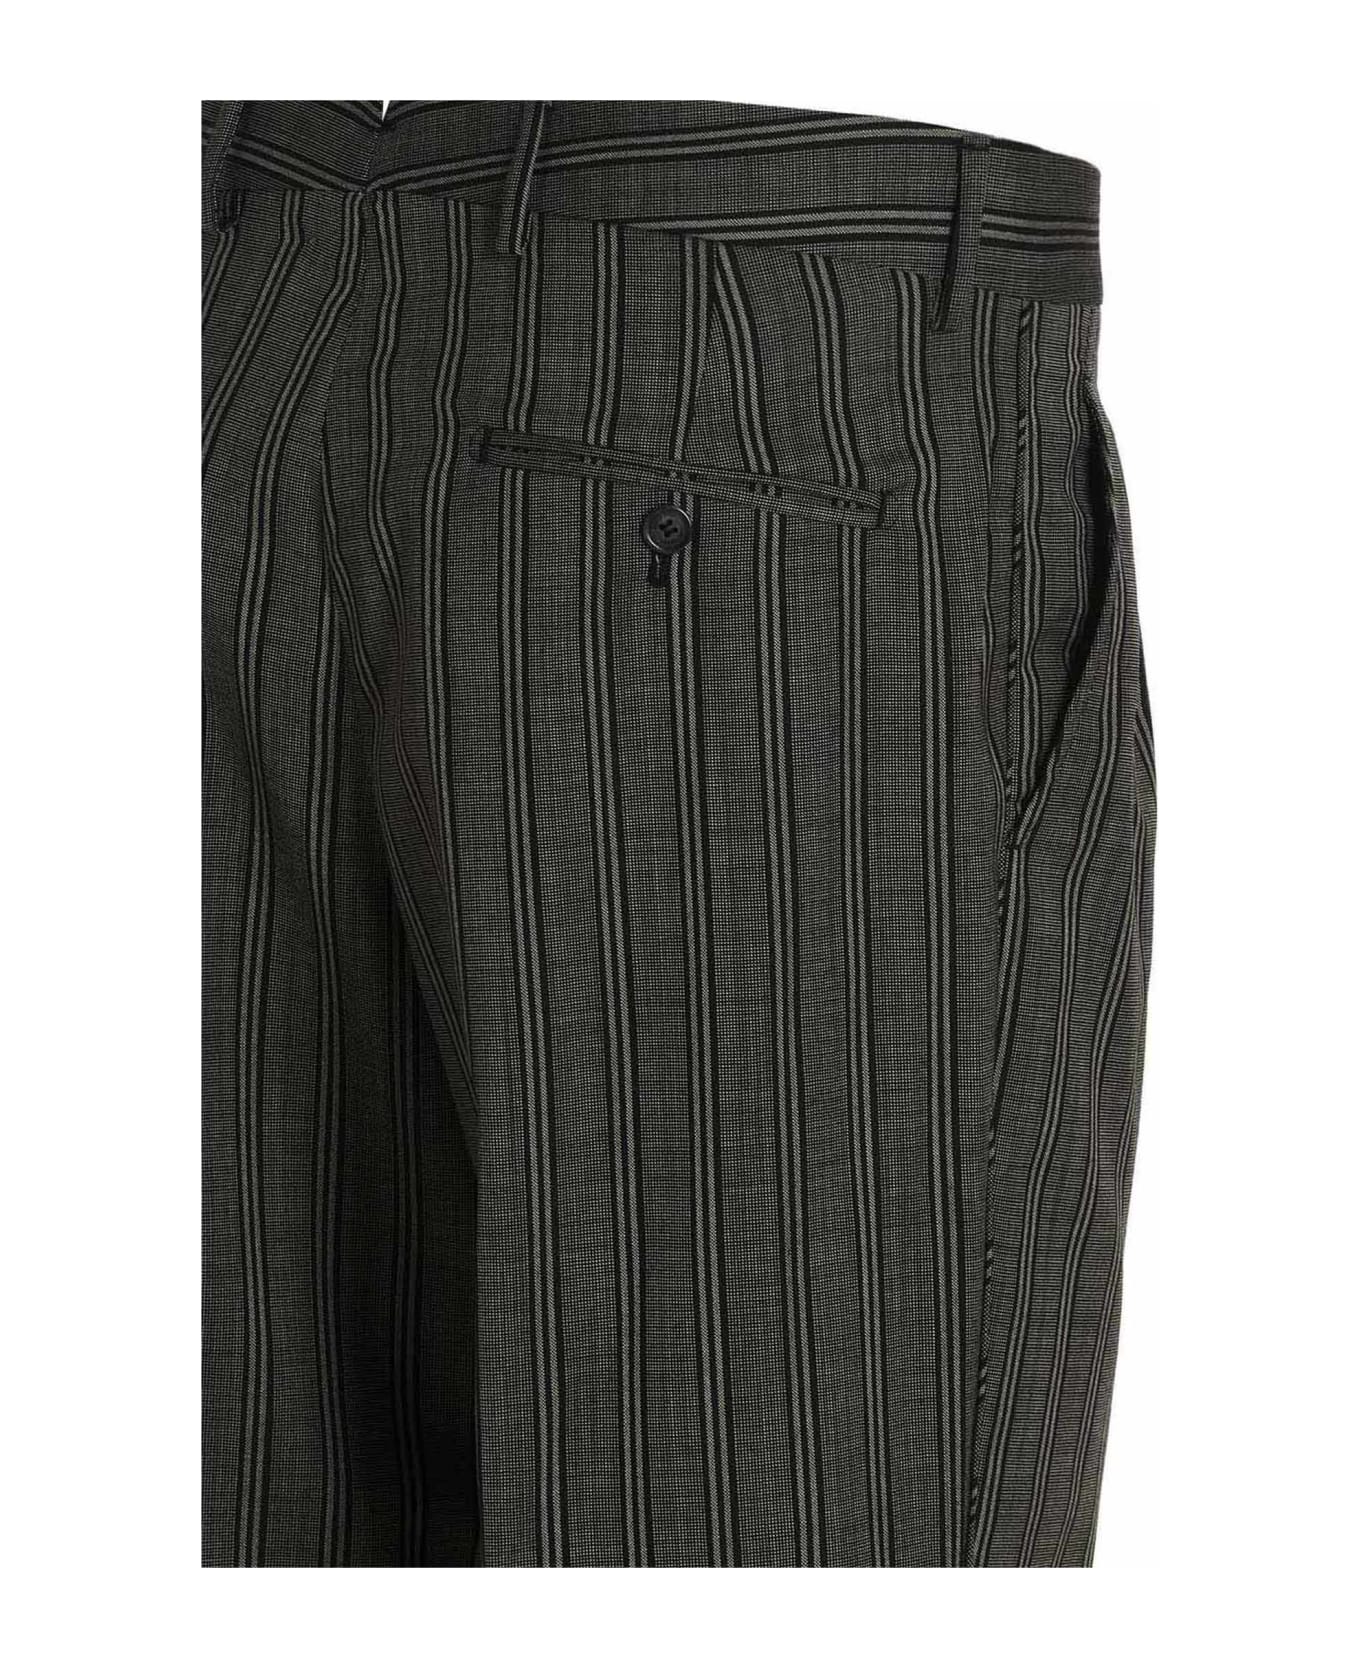 VTMNTS 'tonal Two-pleat Tailored' Pants - Black  